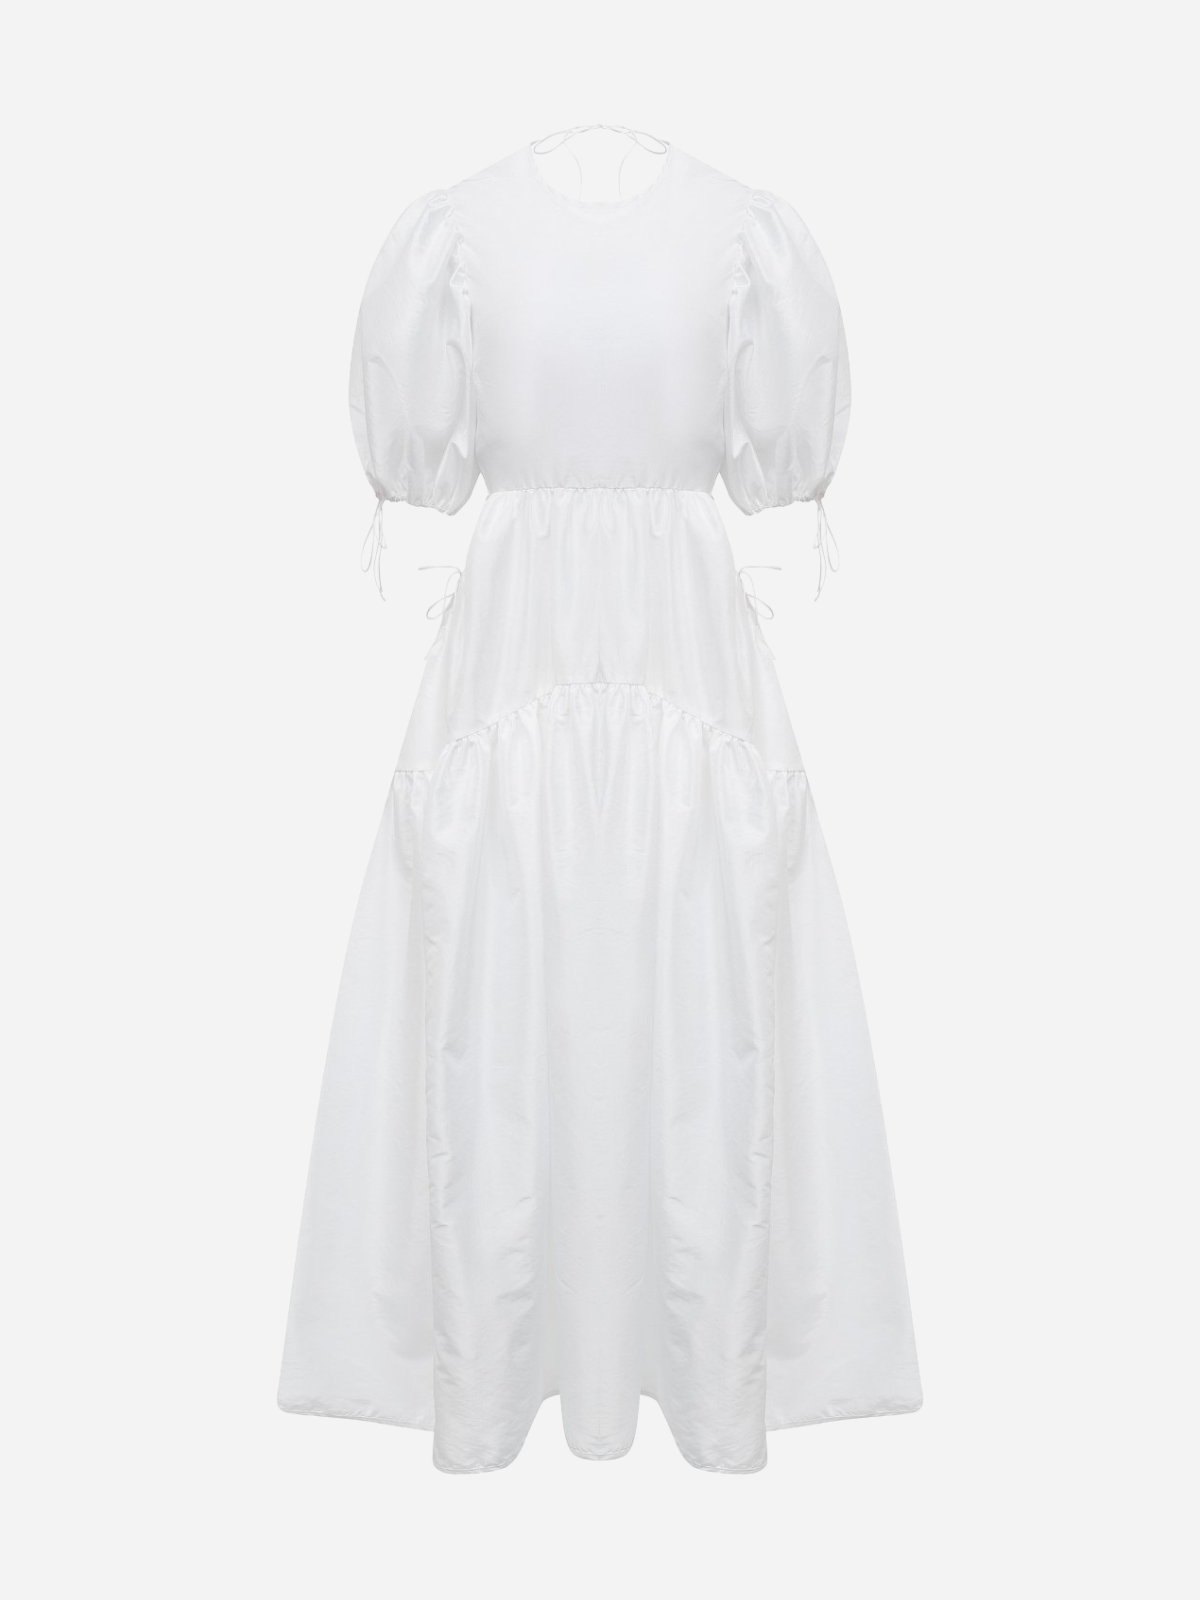 На свадьбу, после свадьбы или просто так: 20 лаконичных белых платьев на лето (фото 17)